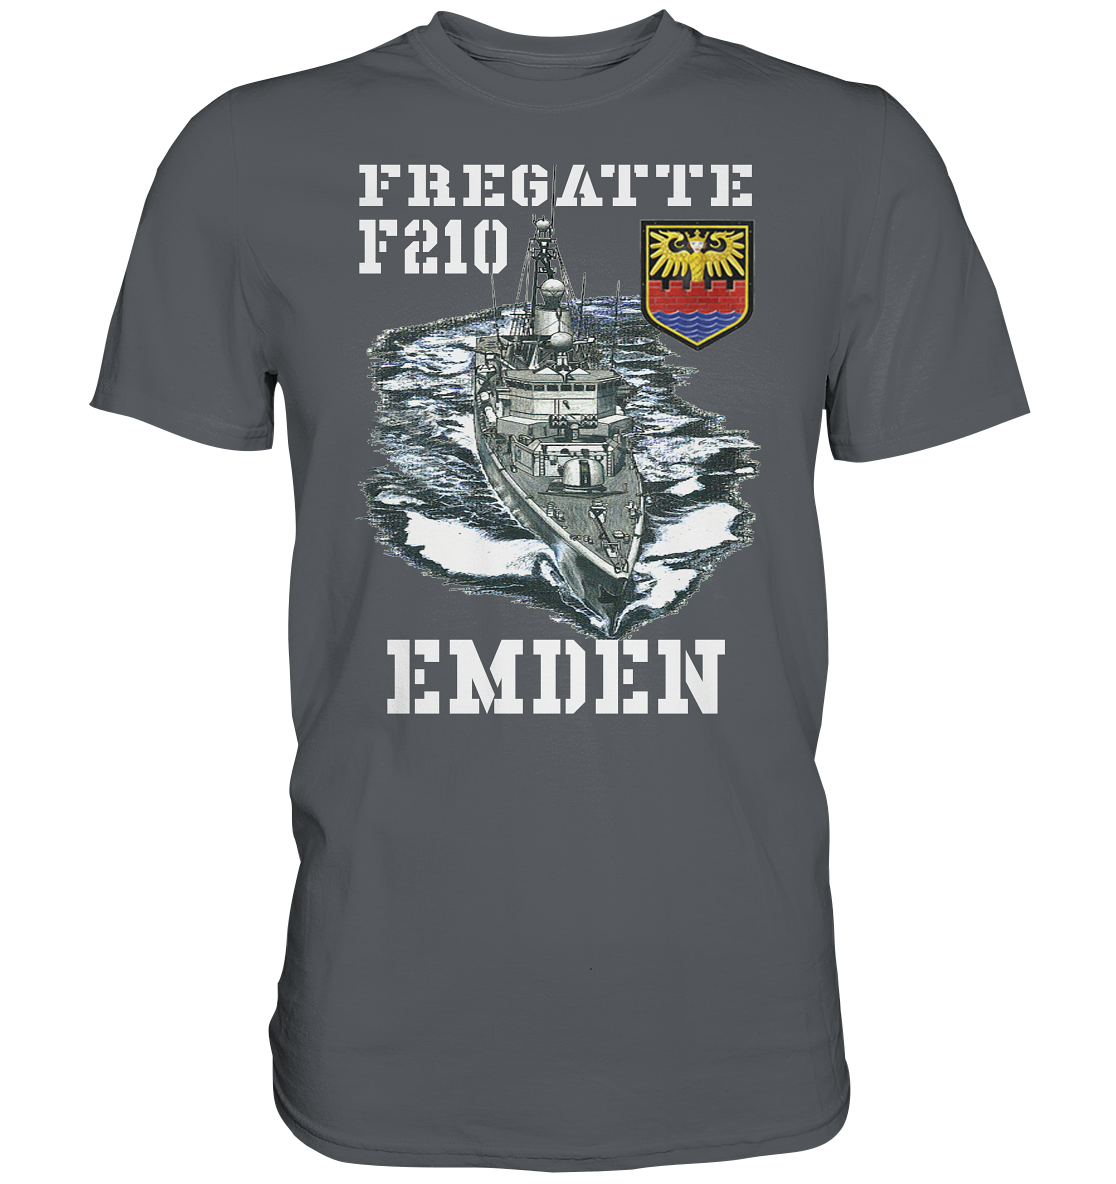 Fregatte F210 EMDEN - Premium Shirt